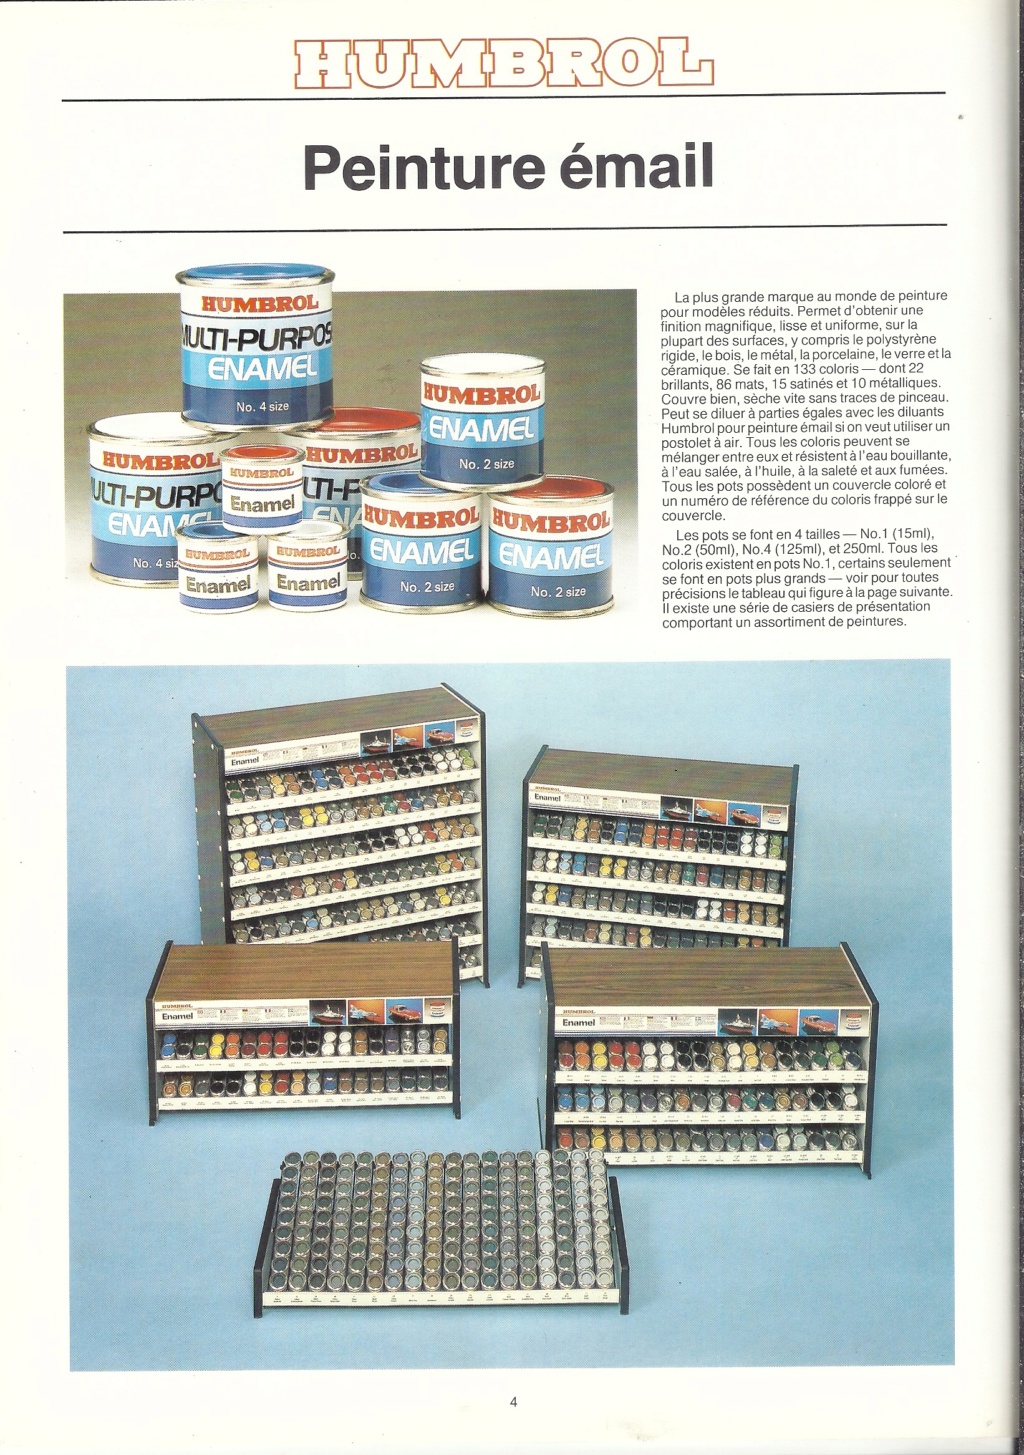 [1985] Pochette détaillant HELLER HUMBROL avec catalogues et tarif revendeur 1985  Hell4033